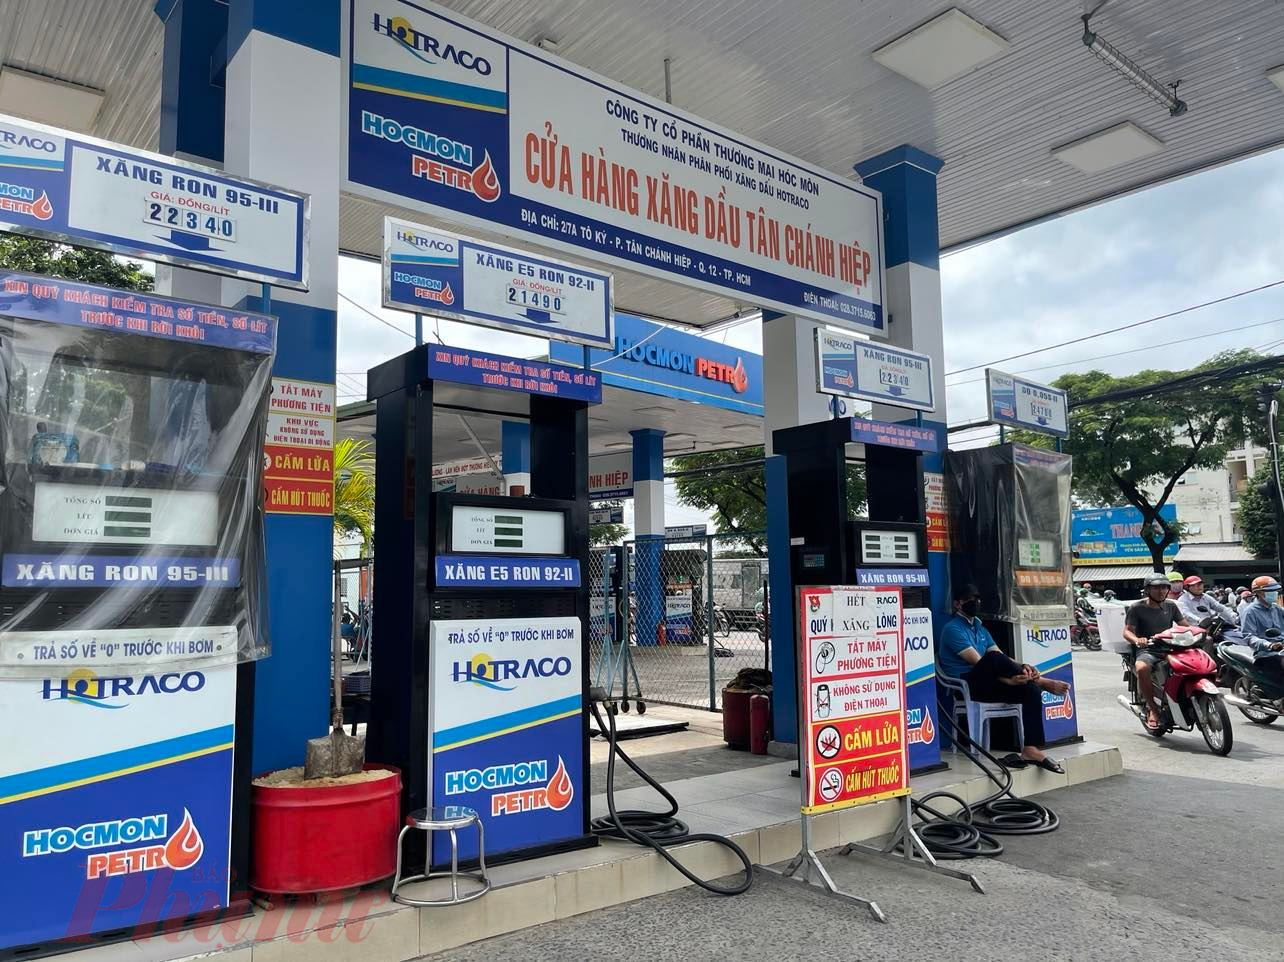 Cửa hàng xăng kế bên cùng chung hệ thống Hocmon Petro cũng thông báo hết xăng, có 3 nhân viên ở đây.